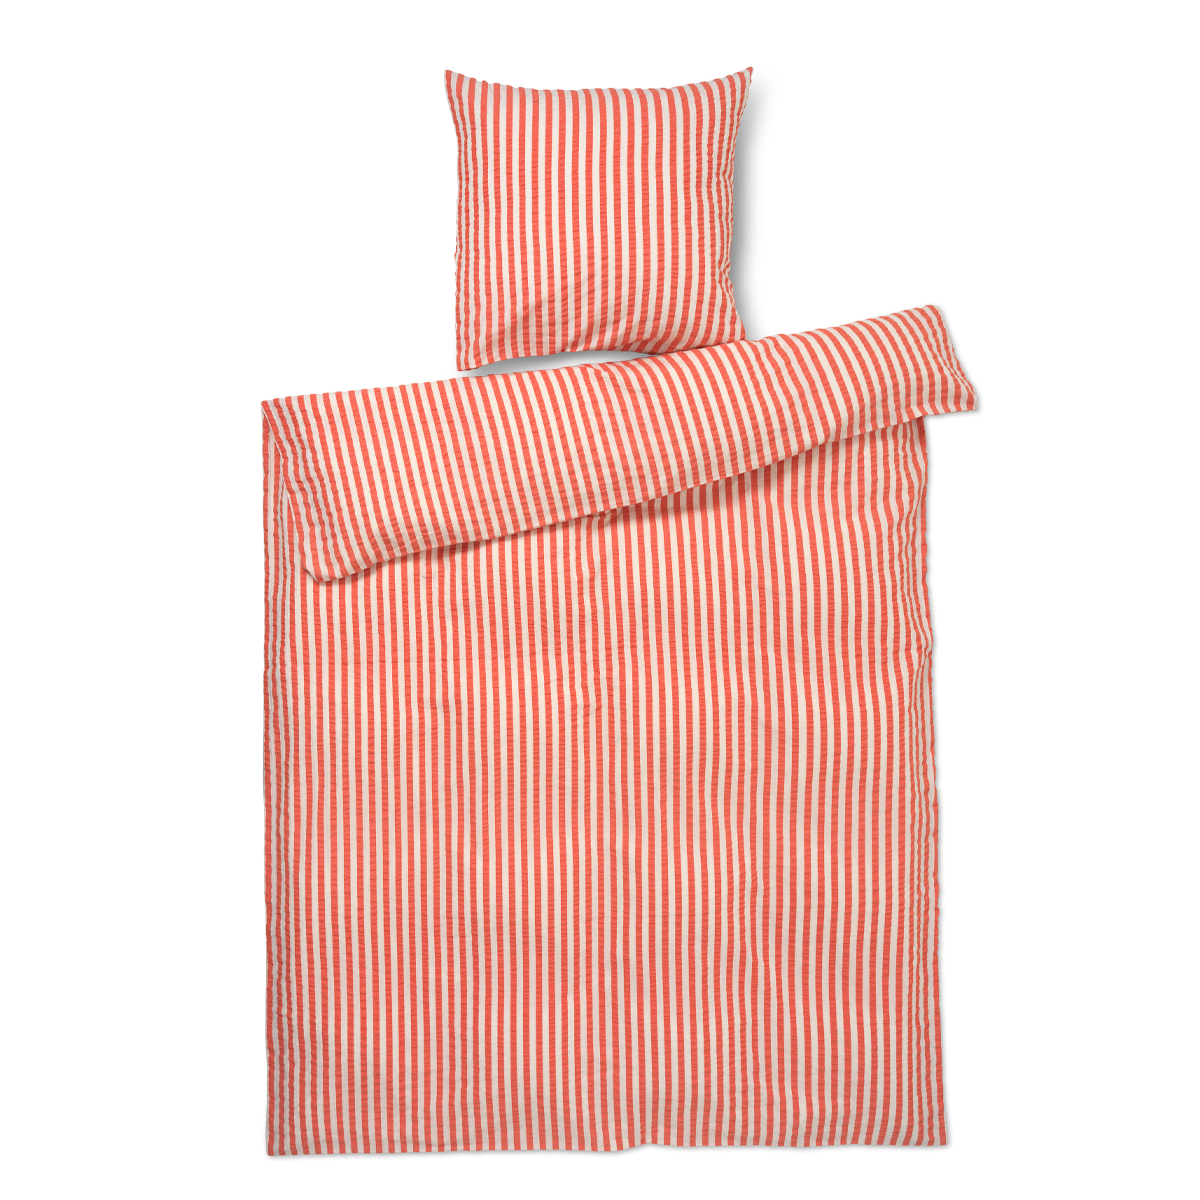 Juna - Organic Bed linen - Crisp Lines - 140 x 200 cm - Chili